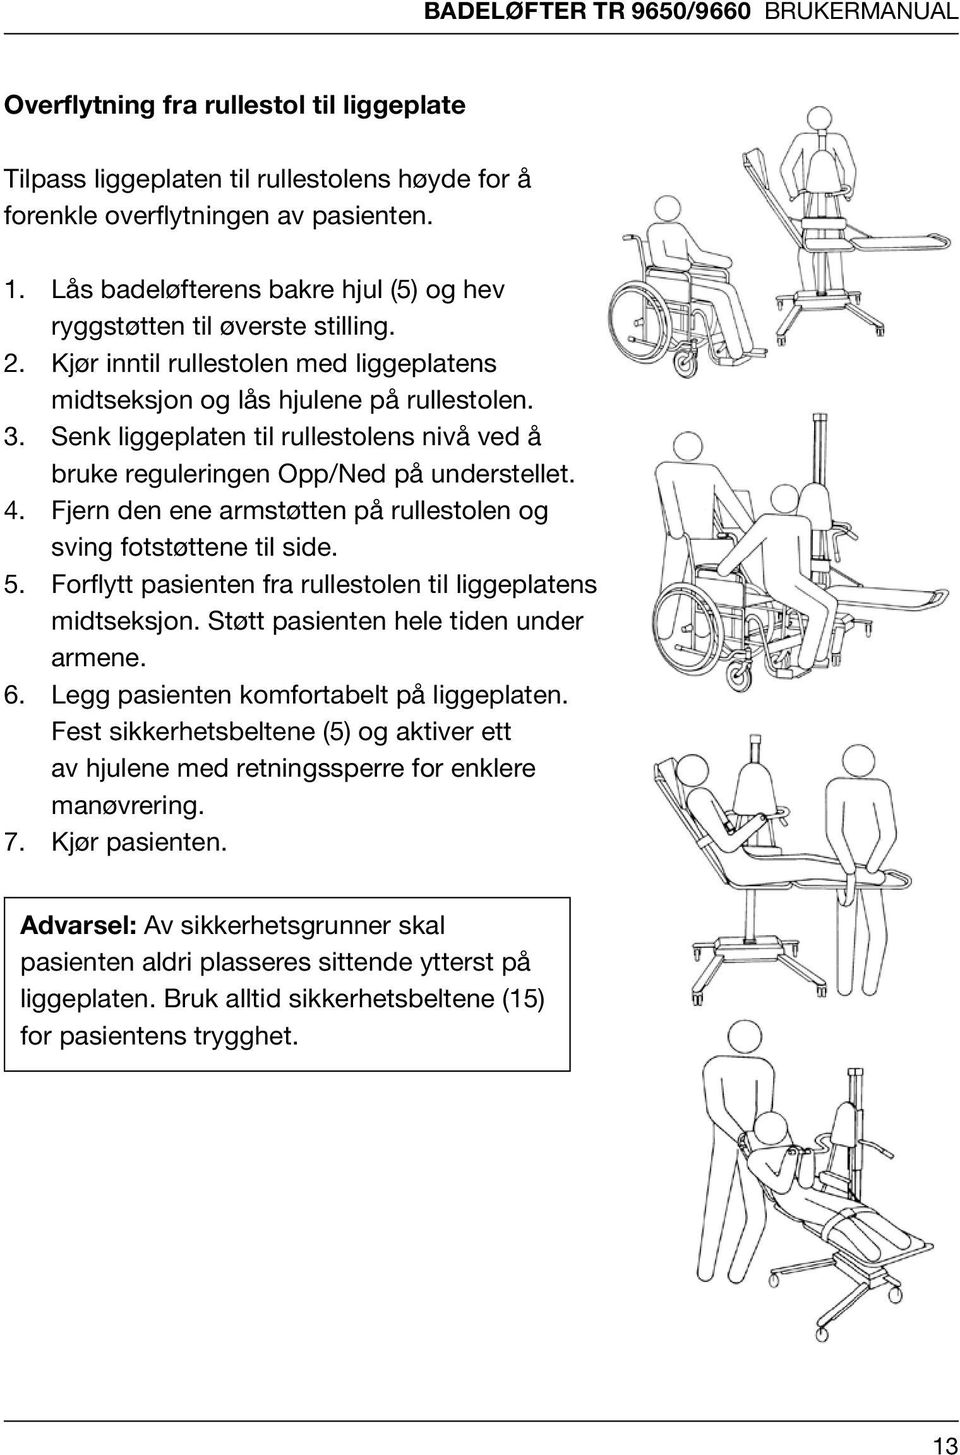 for å forenkle å forenkle over- over- flytningen Tilpass liggeplaten Tilpass flytningen liggeplaten av til av pasienten. pasienten. til rullestolens høyde for å forenkle å overflytningen av pasienten.